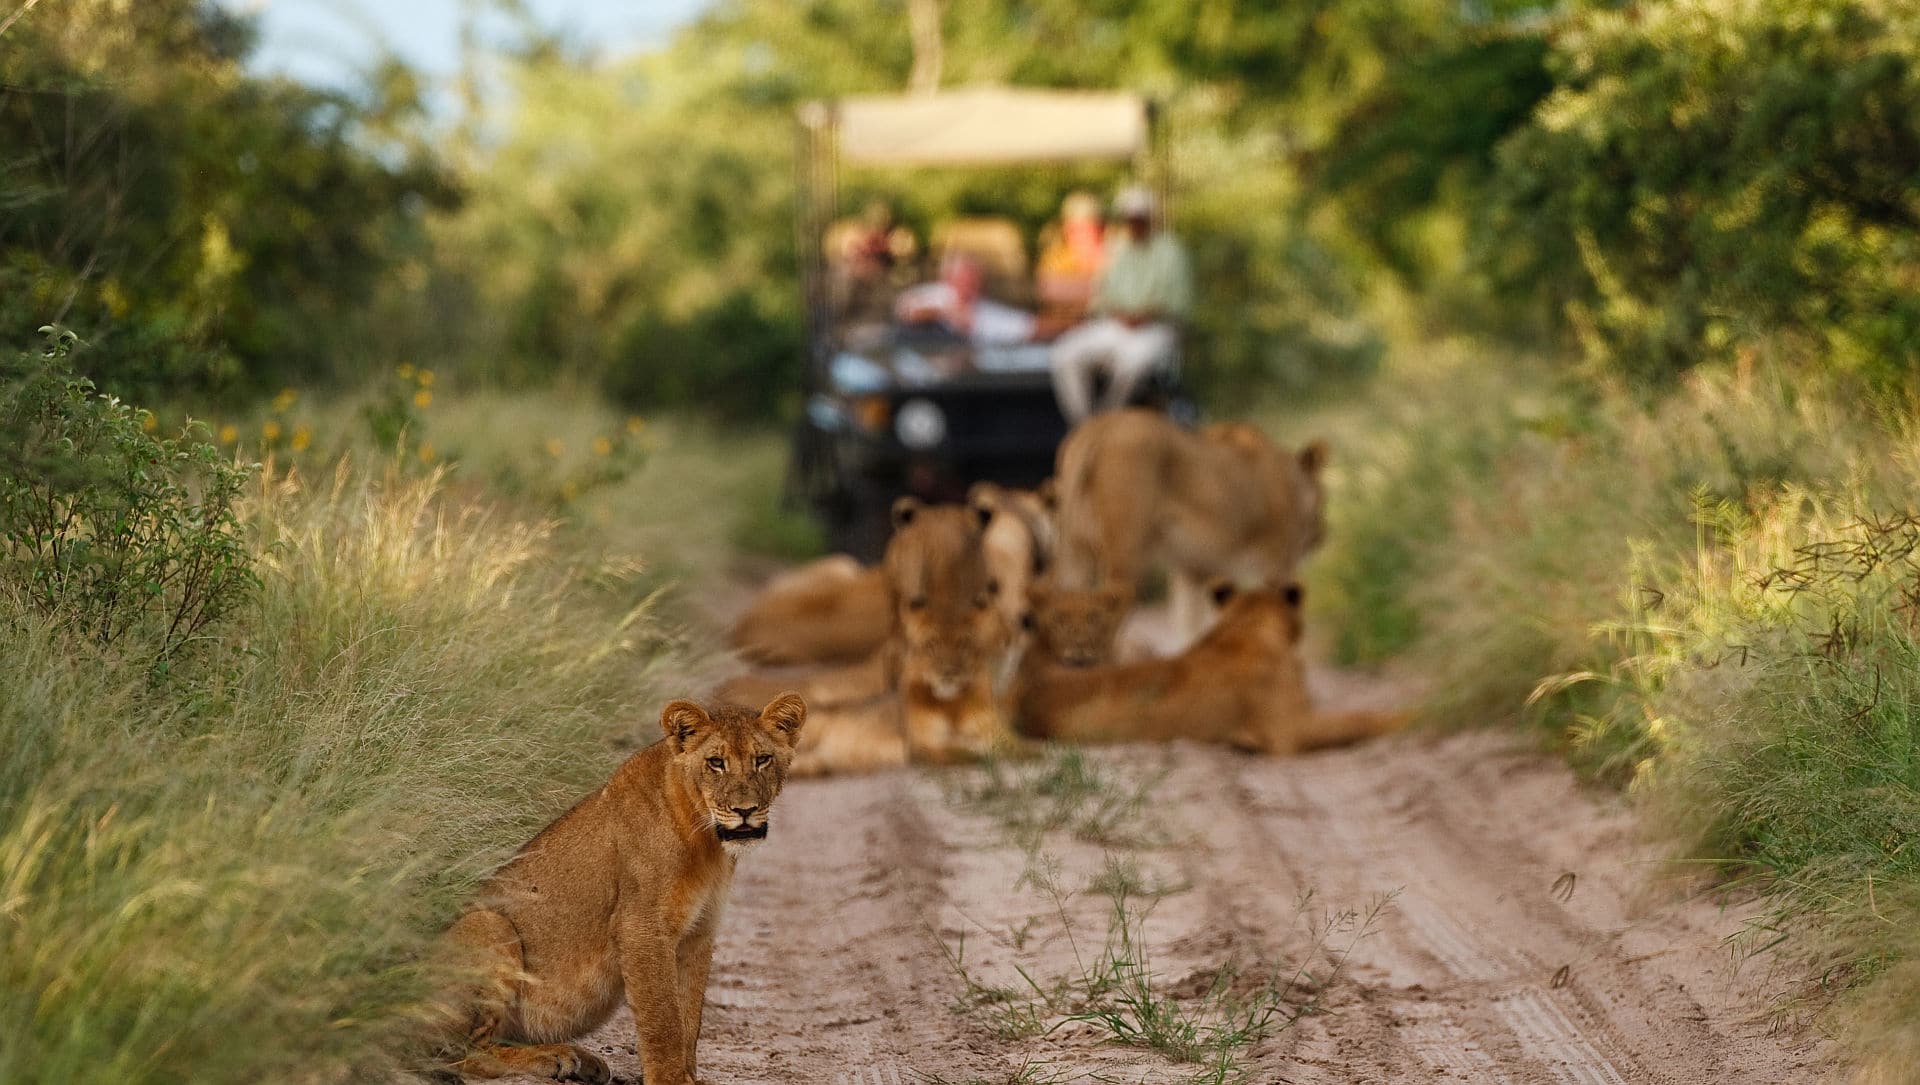 kalahari lion safaris